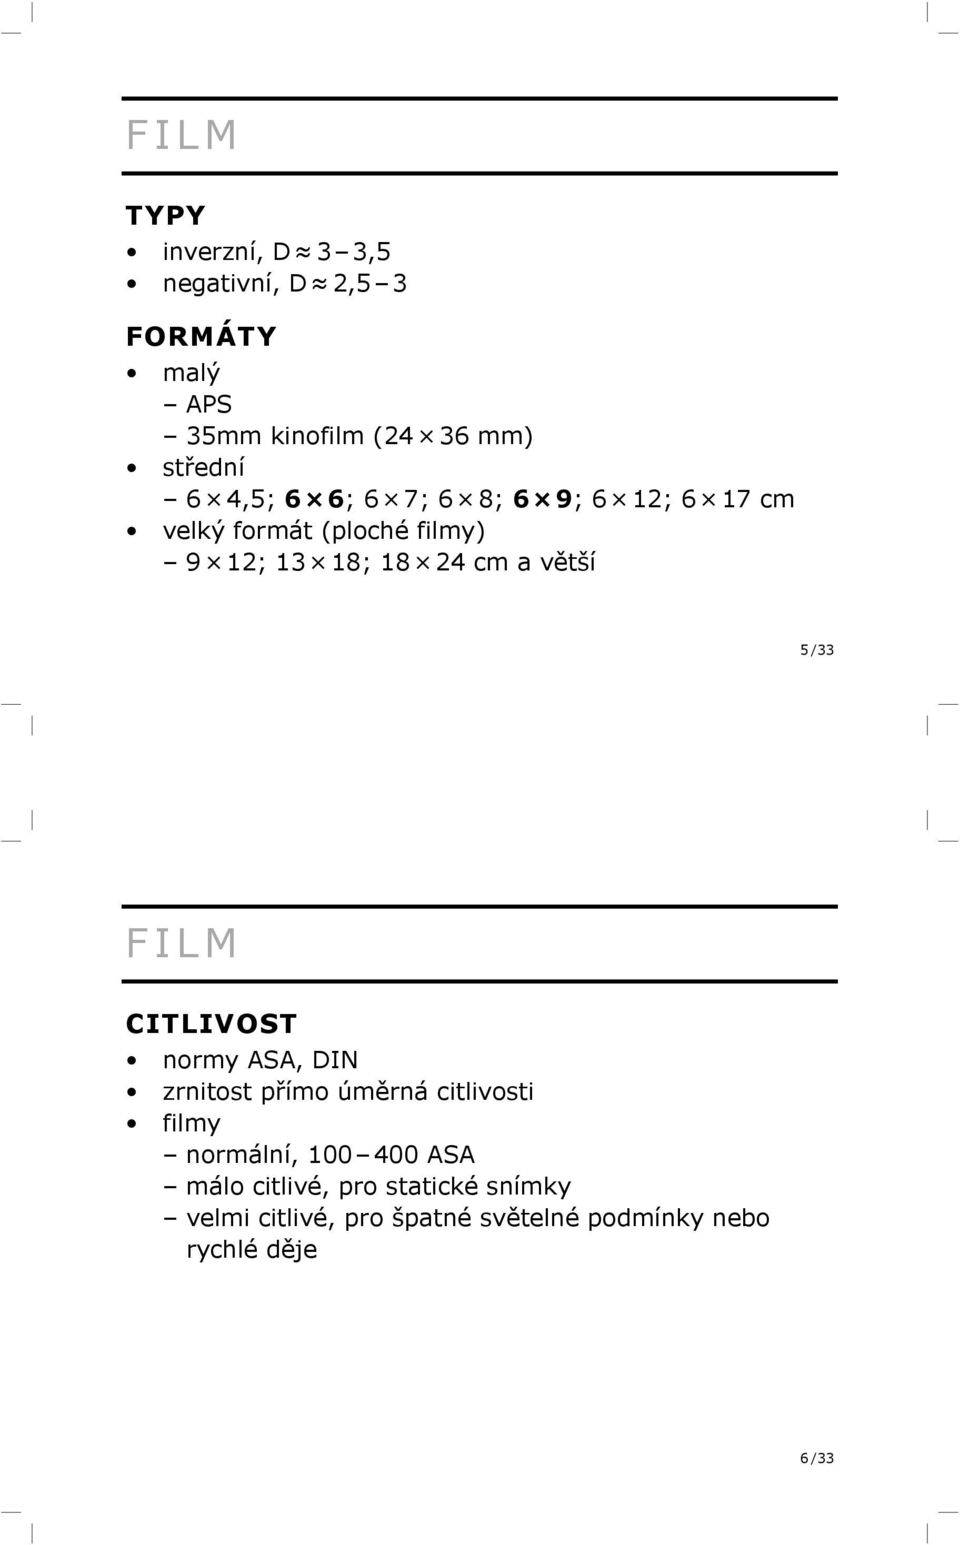 /33 FILM CITLIVOST normy ASA, DIN zrnitost přímo úměrná citlivosti filmy normální, 100 400 ASA